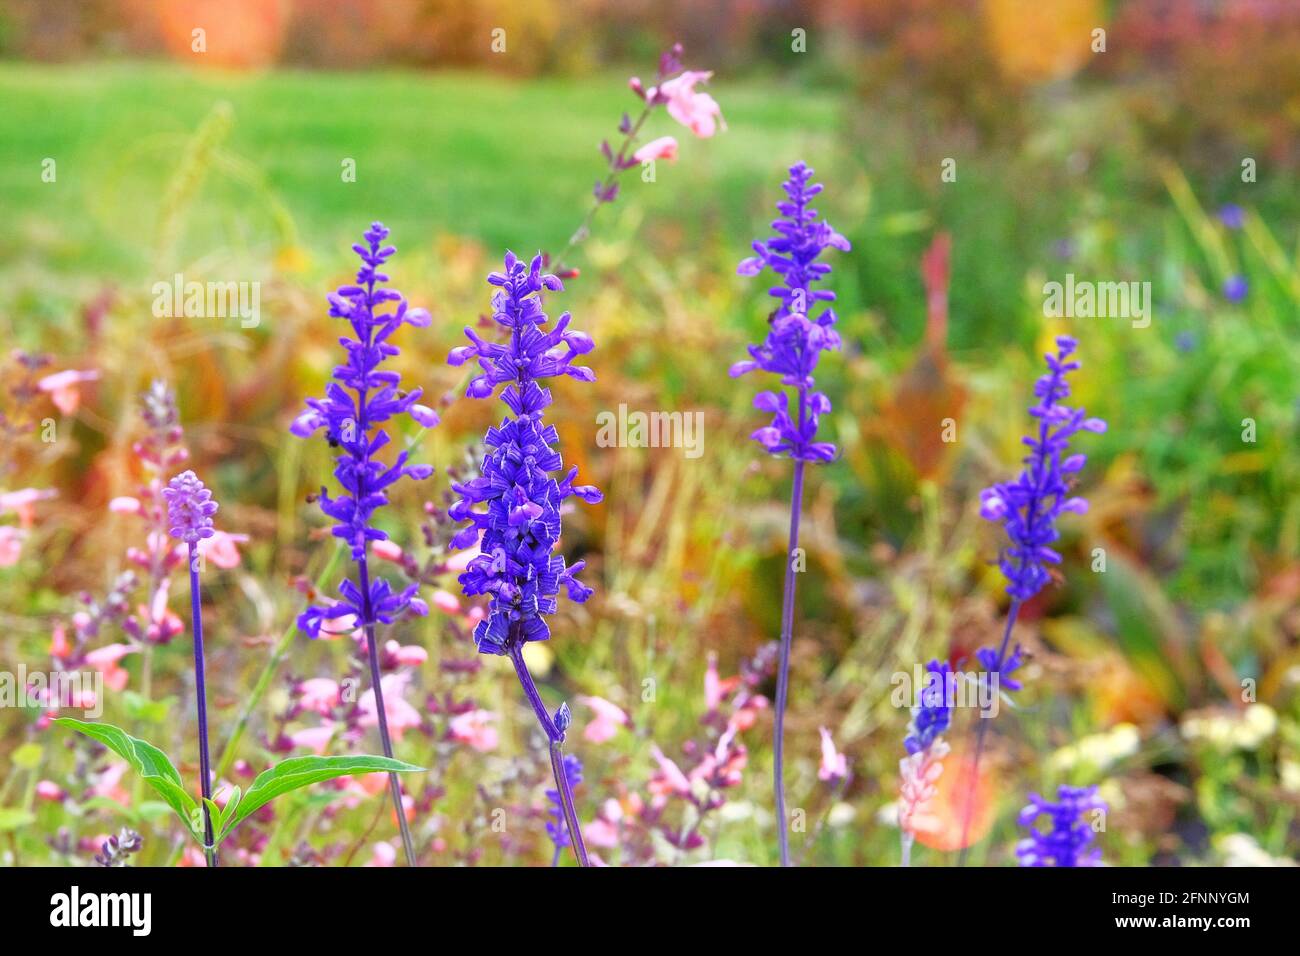 Salvia von purpurner Farbe auf der Wiese an sonnigen Tagen. Nahaufnahme von violettem Sommersalbei auf verschwommenem Hintergrund von grünem Gras. Stockfoto